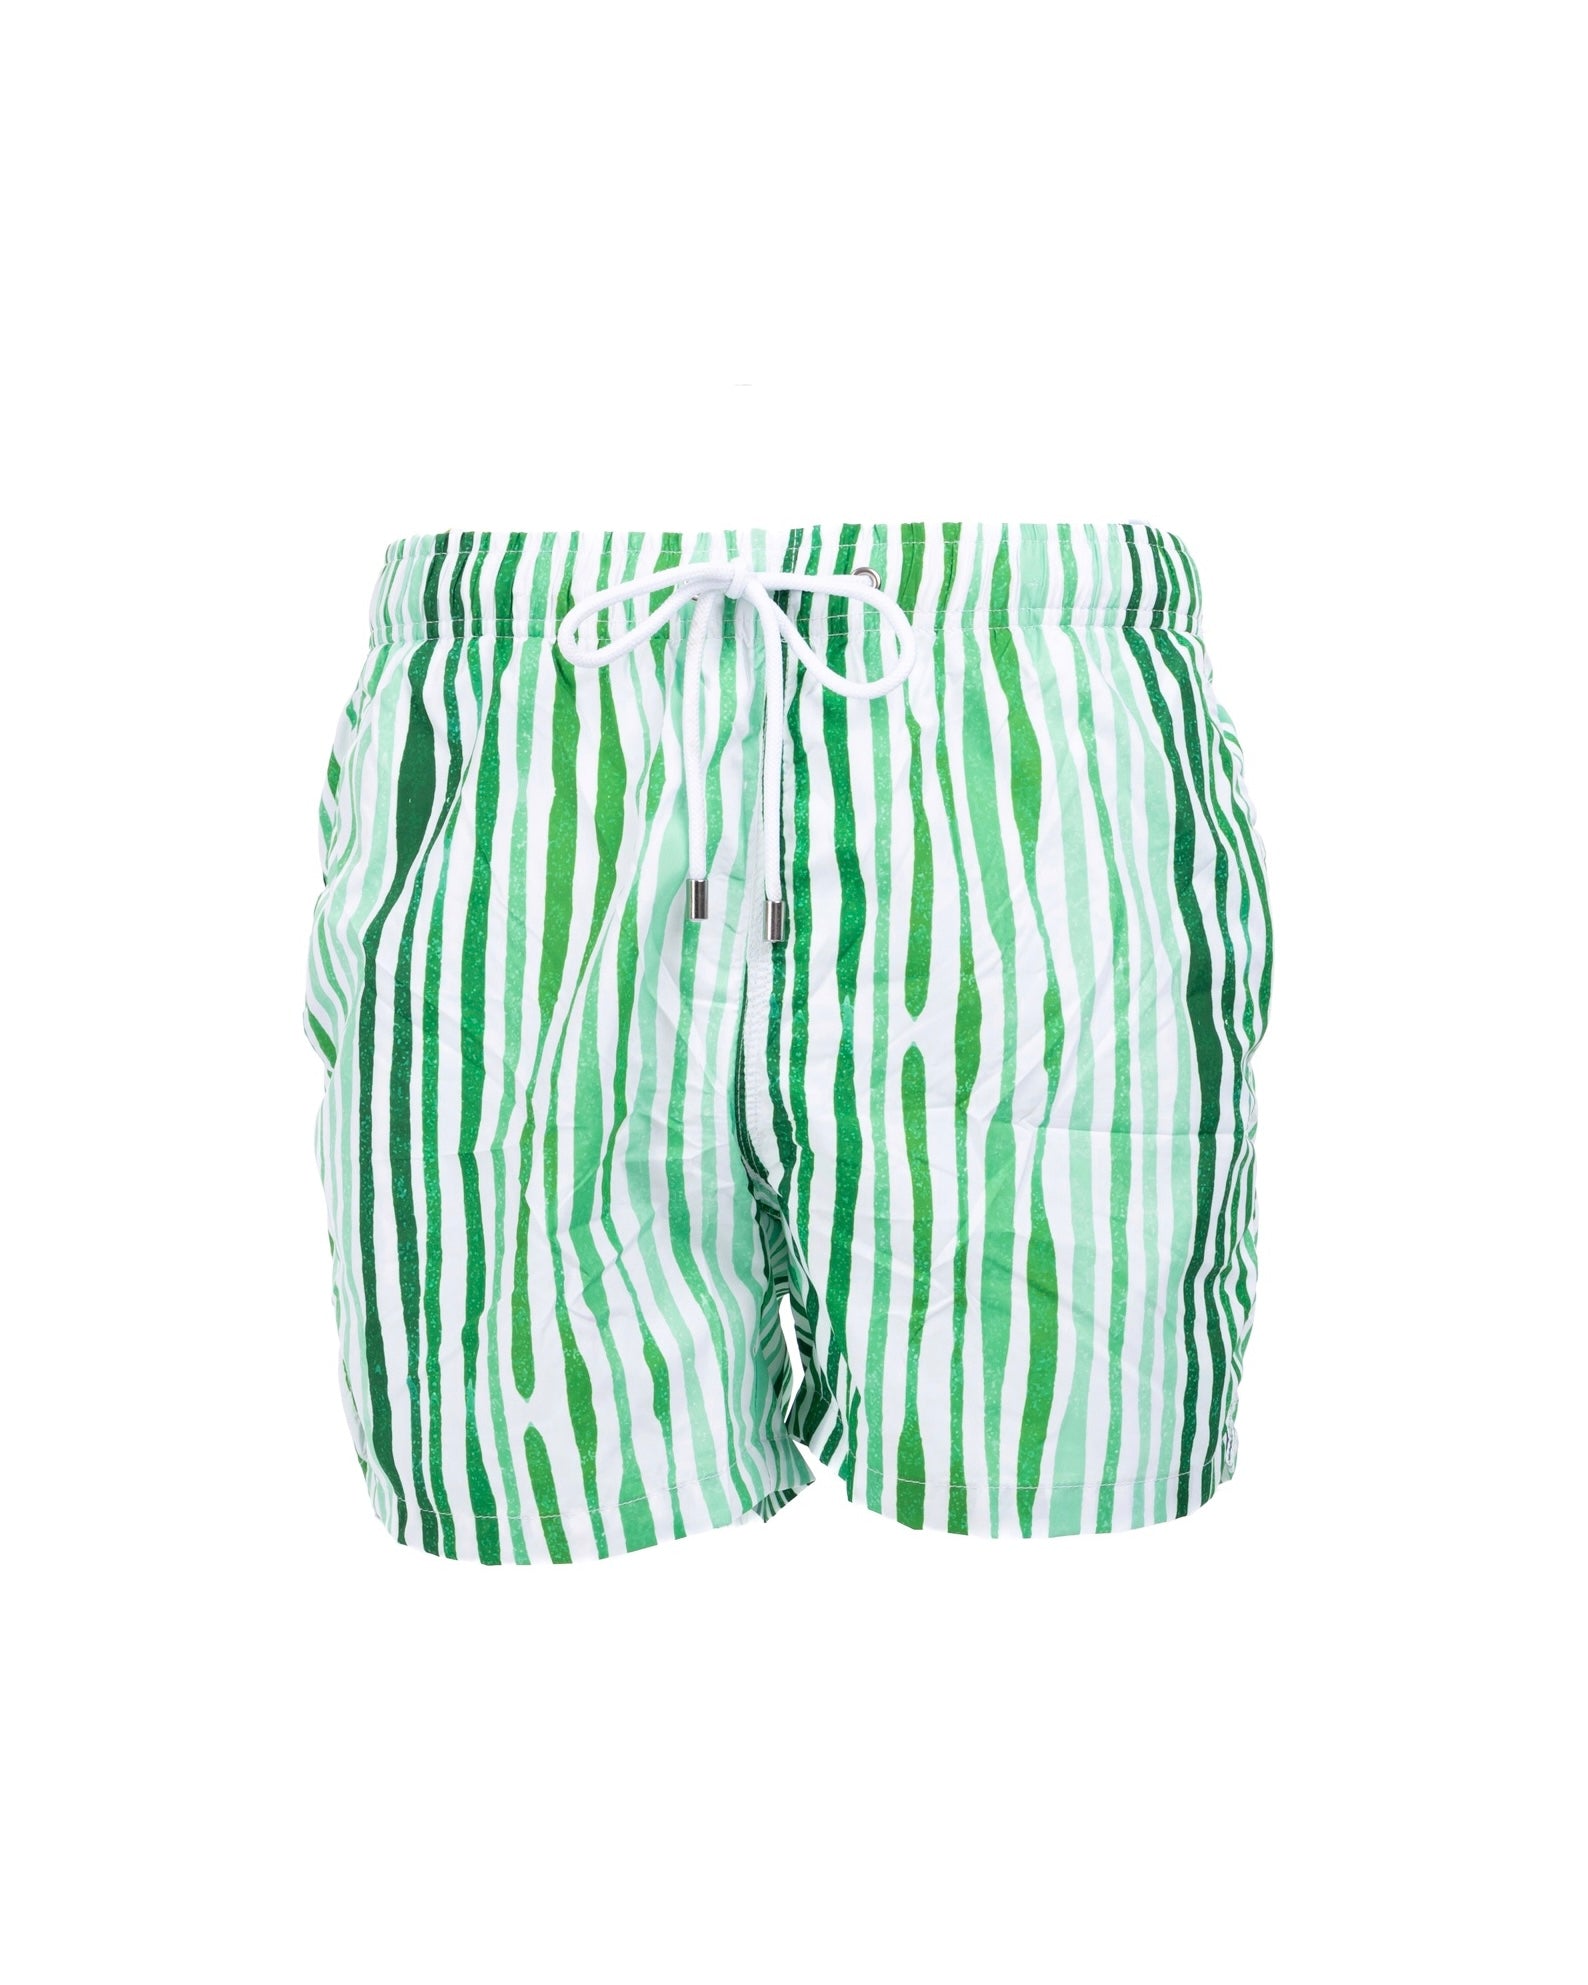 Stripe - maillot de bain vert à motifs